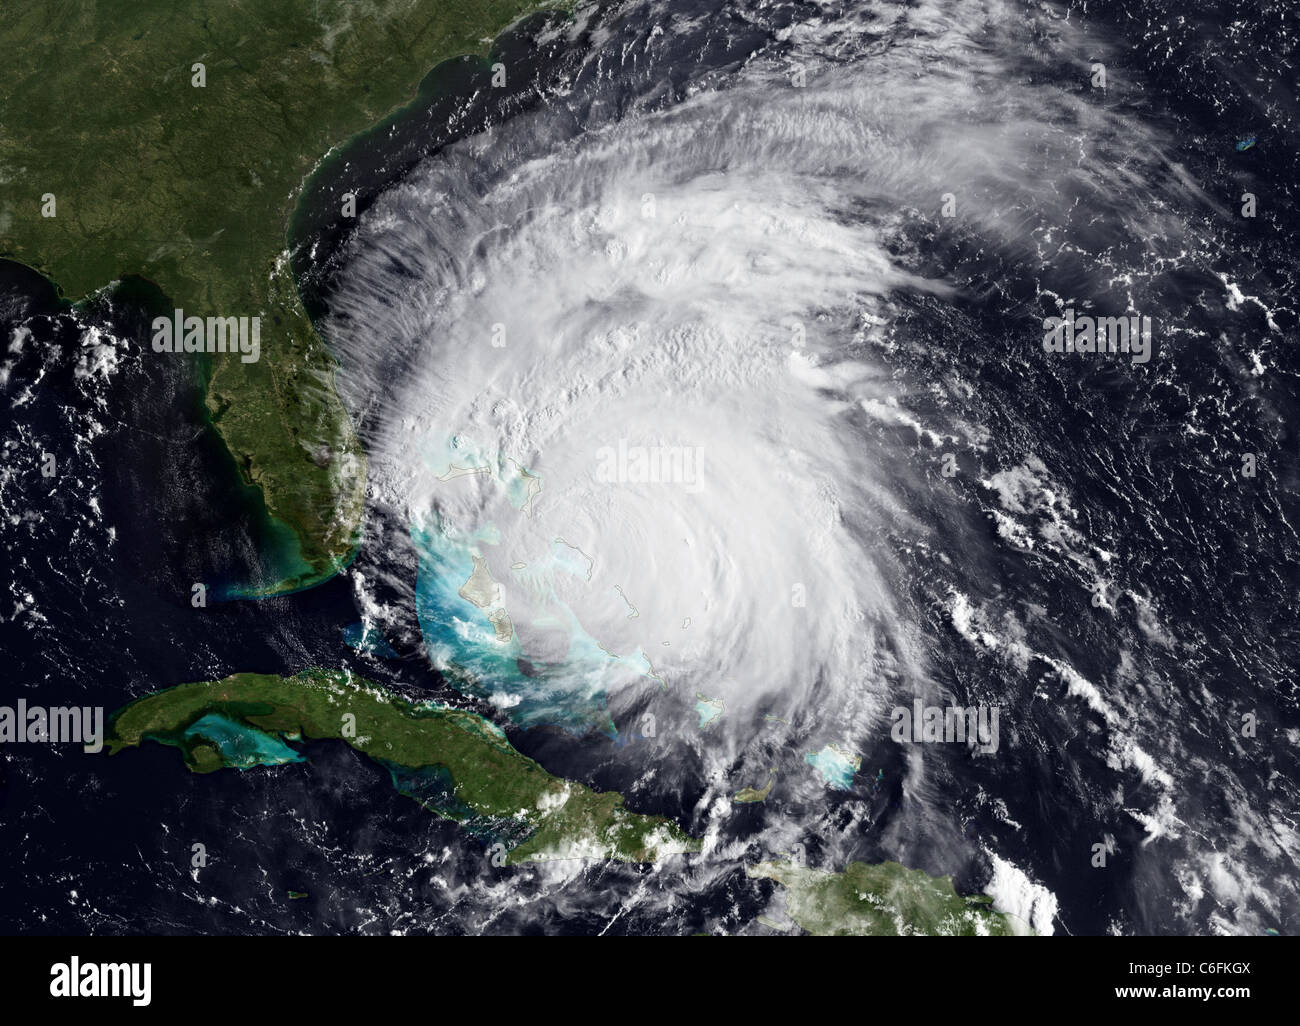 Hurrikan Irene update - August 25, 2011 Irene ist immer noch die Verpackung einen Dorn mit 115 MPH Winden. Obwohl das Auge aus Dieser noaa verschwunden ist - Osten Satellitenbilder (am 25 August, 2011 Um 1215 z), der Sturm ist nicht schwächen. Irene scheint zu sein, durch einen eyewall Austausch Zyklus. das National Hurricane Center ist immer noch die Vorhersage von Irene Kategorie 4 Status in den nächsten Tag zu erreichen. Hurricane und Tropical Storm Uhren sind für viel der Carolina Küste. Die aktuelle Satellitenbilder und Animationen, wenden Sie sich bitte an unsere reale Bilder zeit Webseite sehen. Stockfoto